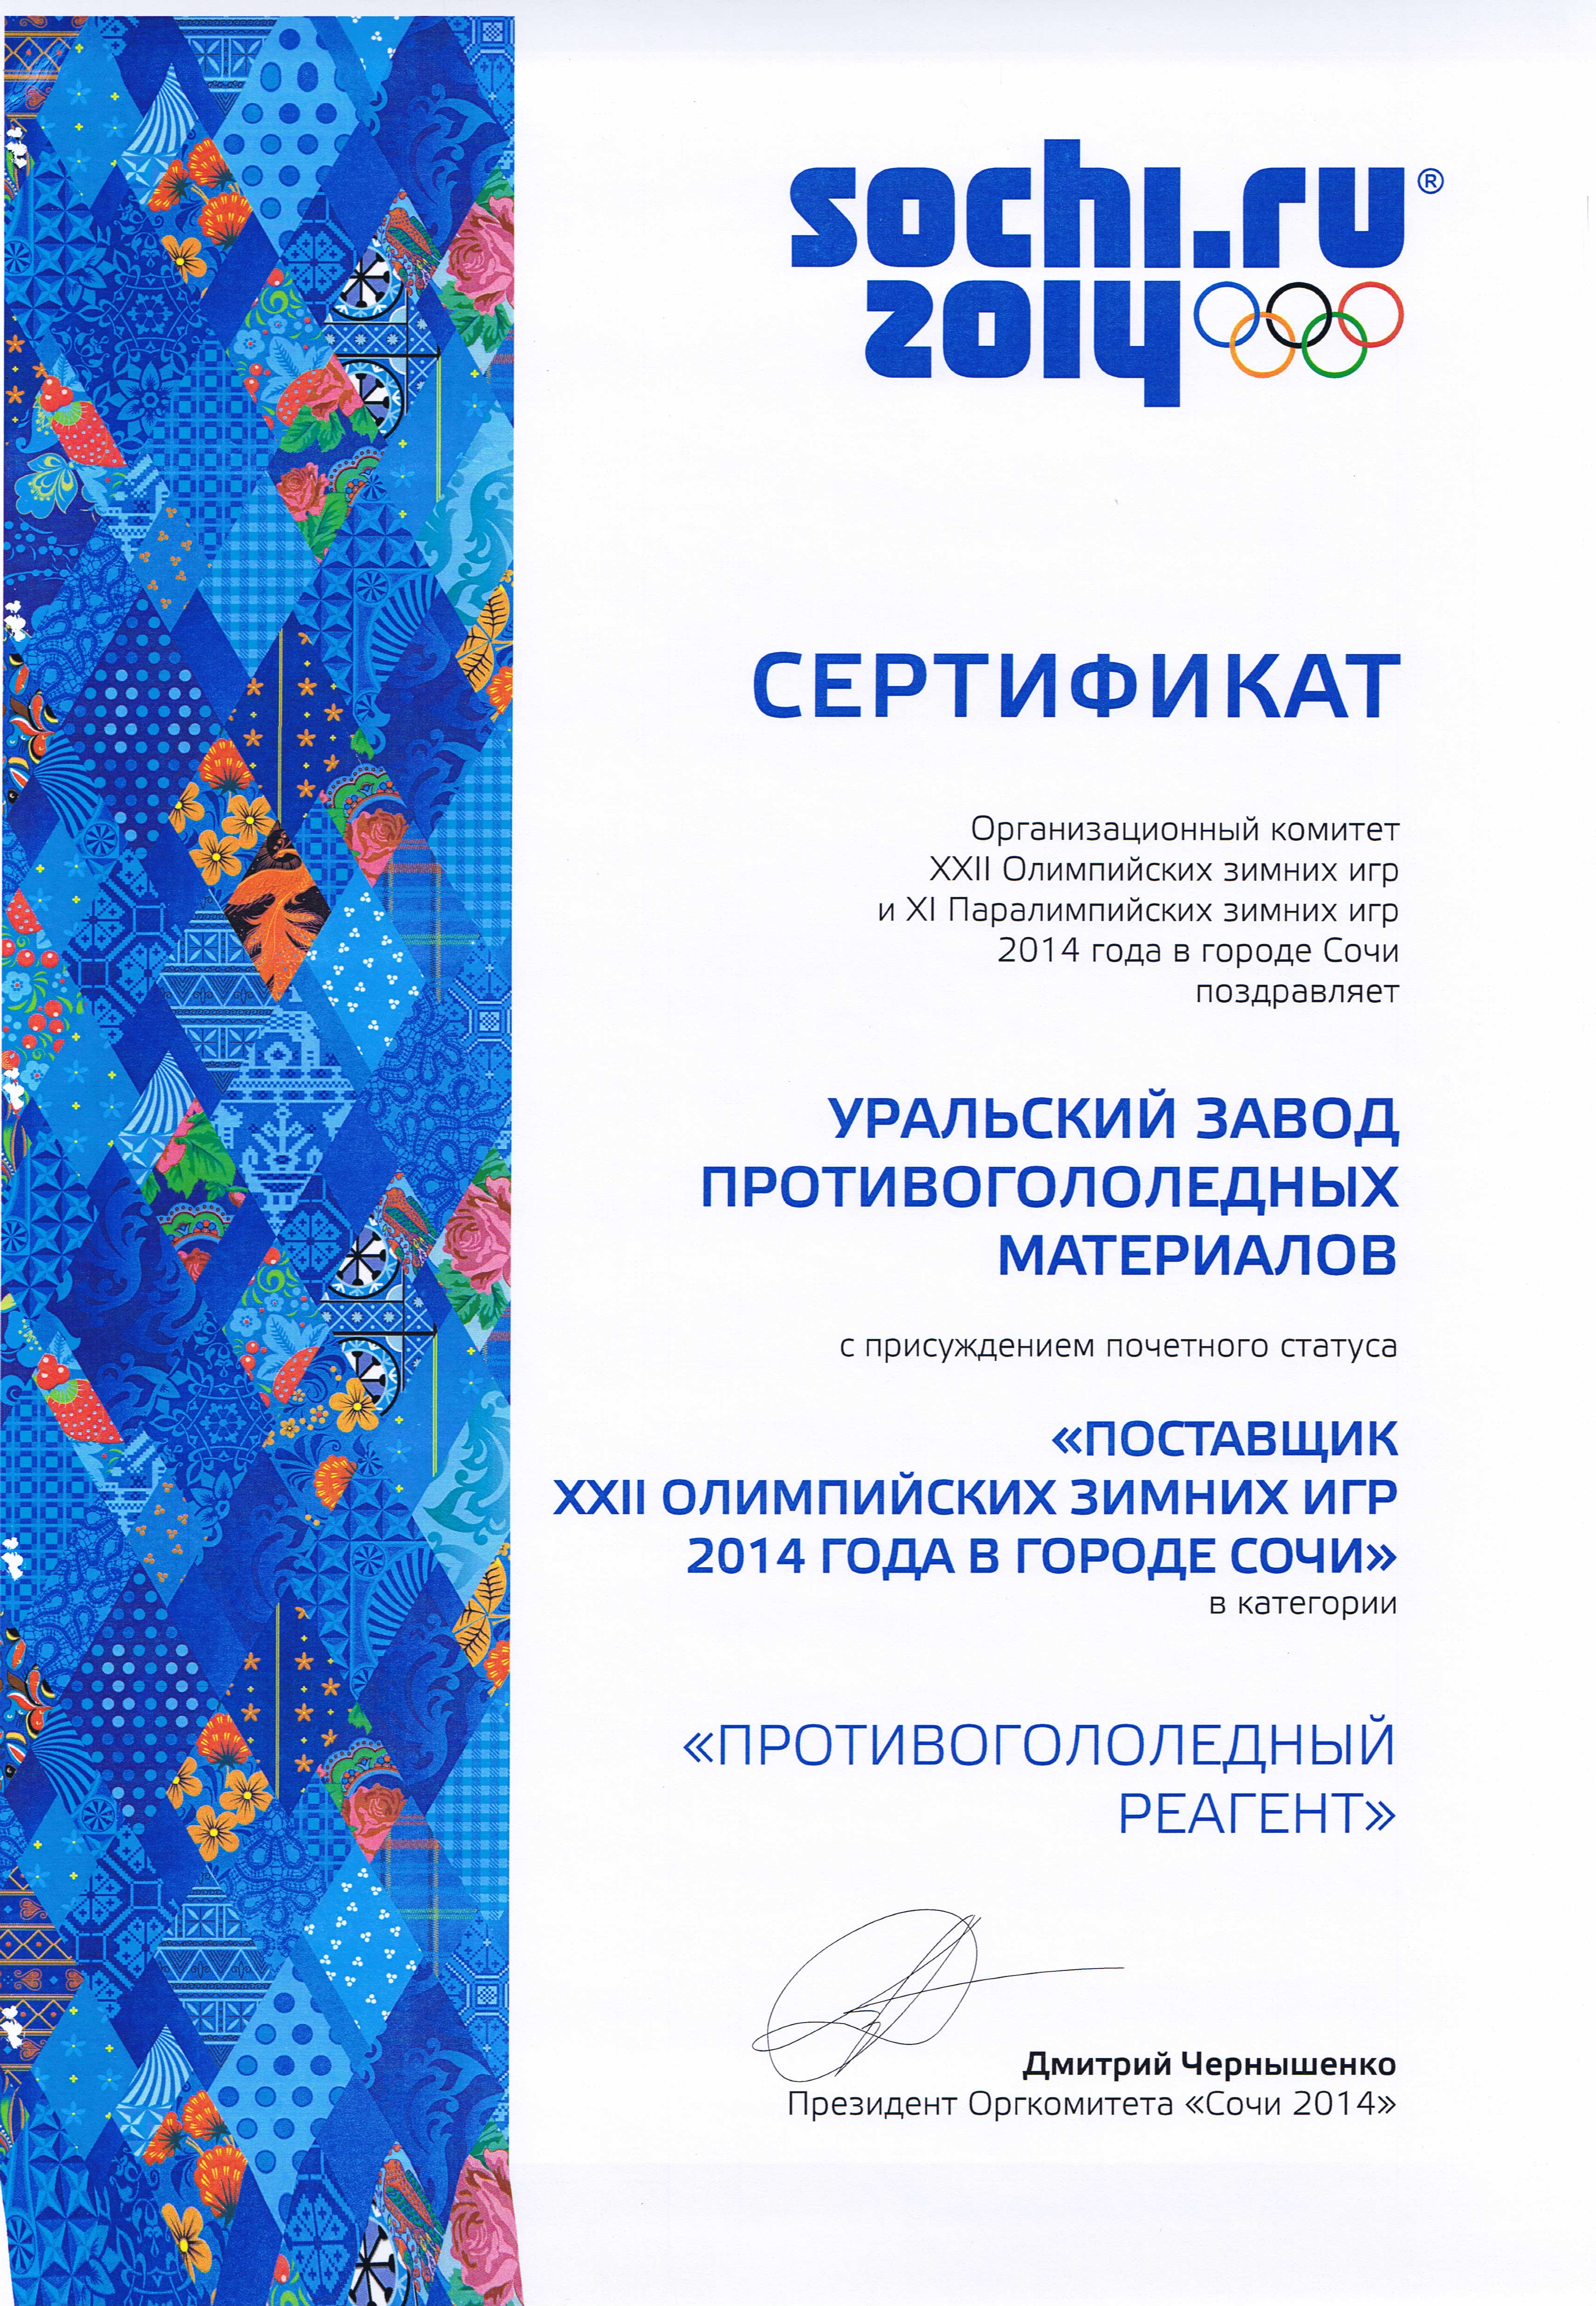 Сертификат подтверждающий статус Уральского завода противогололёдных материалов «Поставщик ХXII Олимпийских зимних игр 2014 года в городе Сочи» в категории «Противогололёдный реагент»